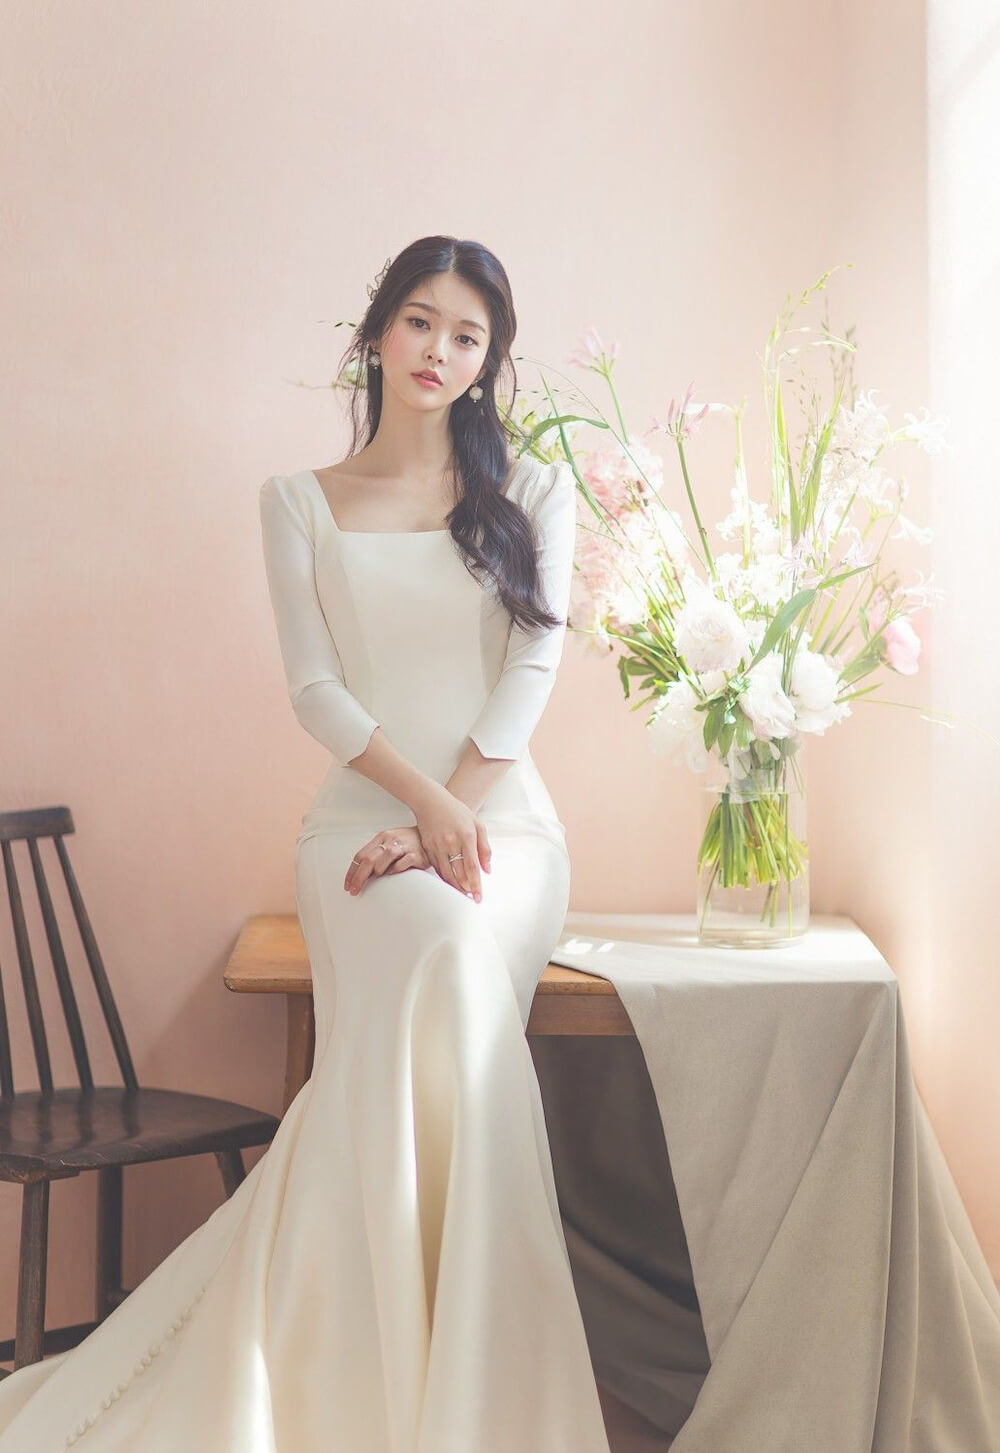 Váy cưới hàn quốc - Đơn giản theo phong cách Hàn